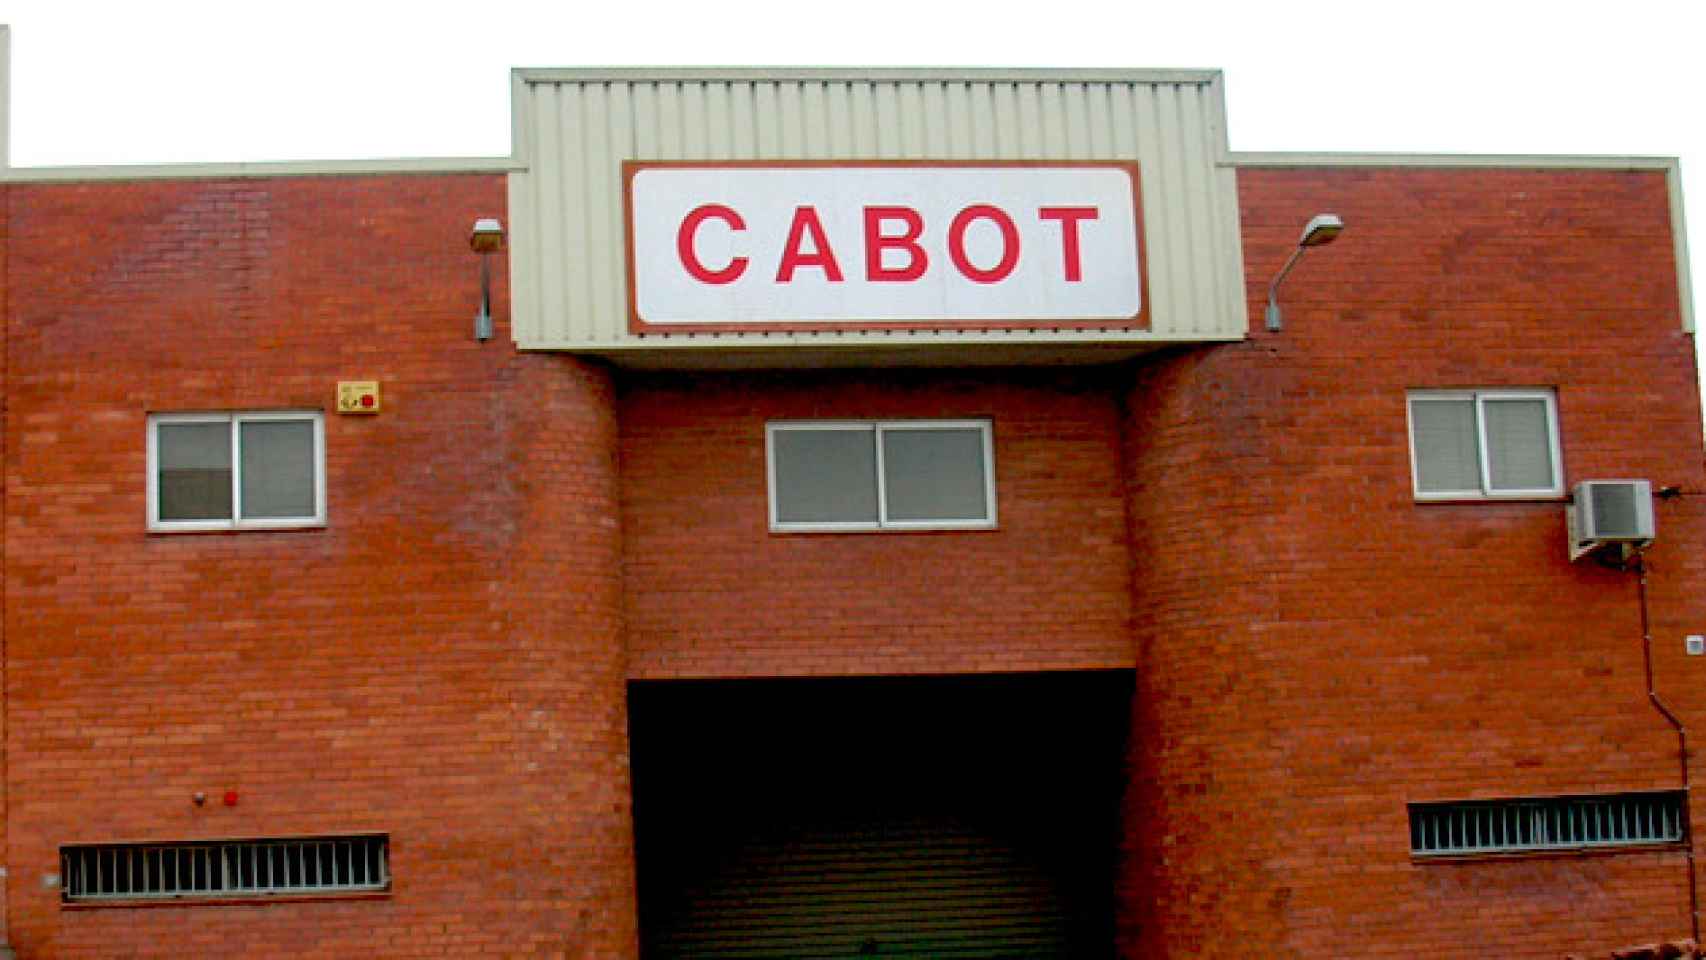 Fundición Cabot, de Sant Esteve Sesrovires, industria siderúrgica especializada en la fundición de piezas moldeadas en arena / CG